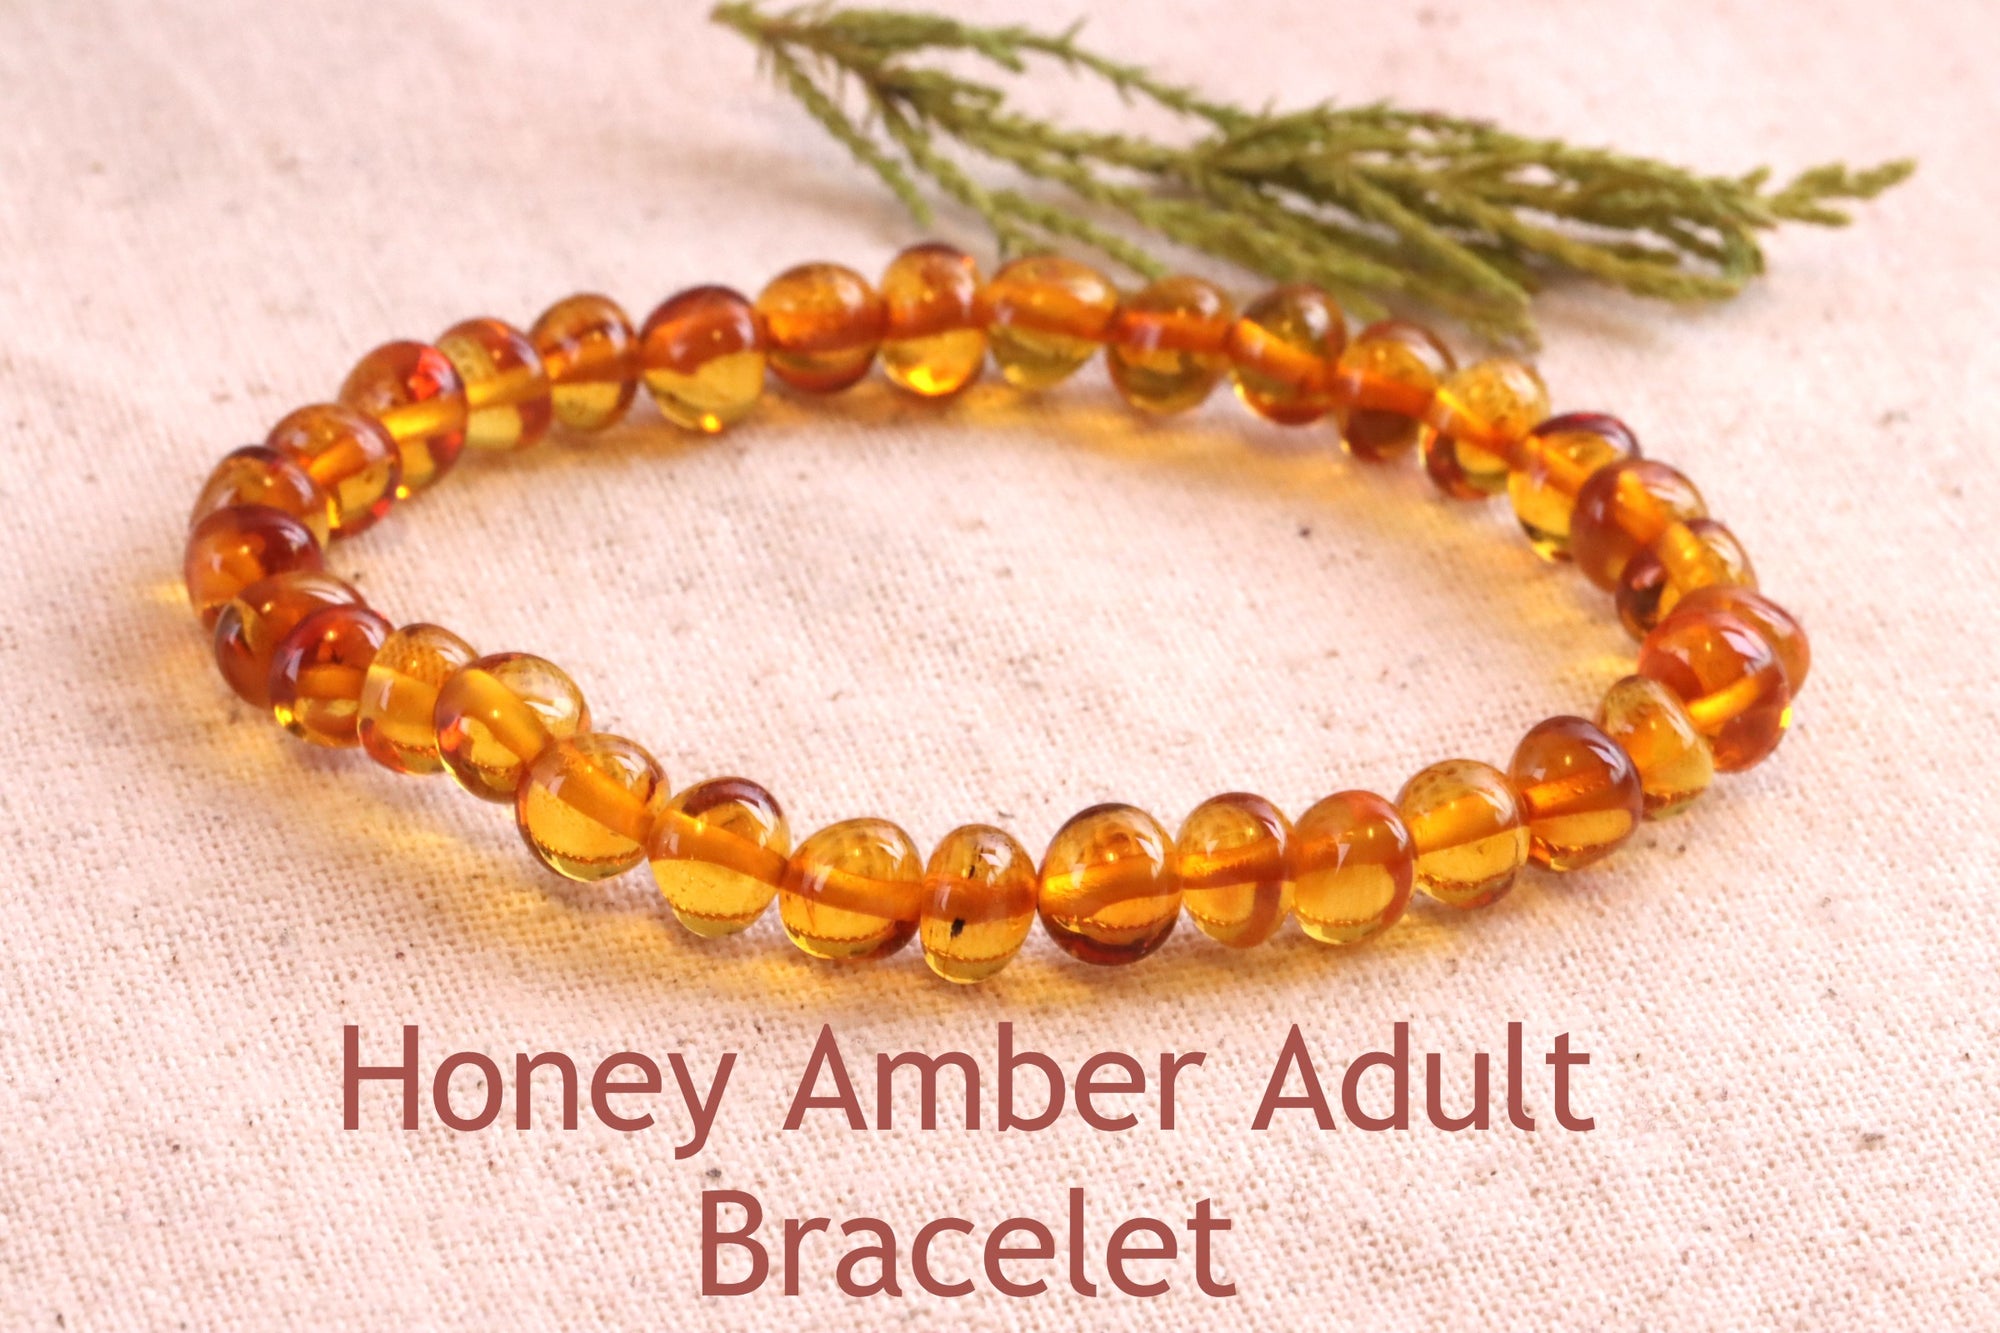 Bank Holiday Special Offer Honey Amber Bracelet